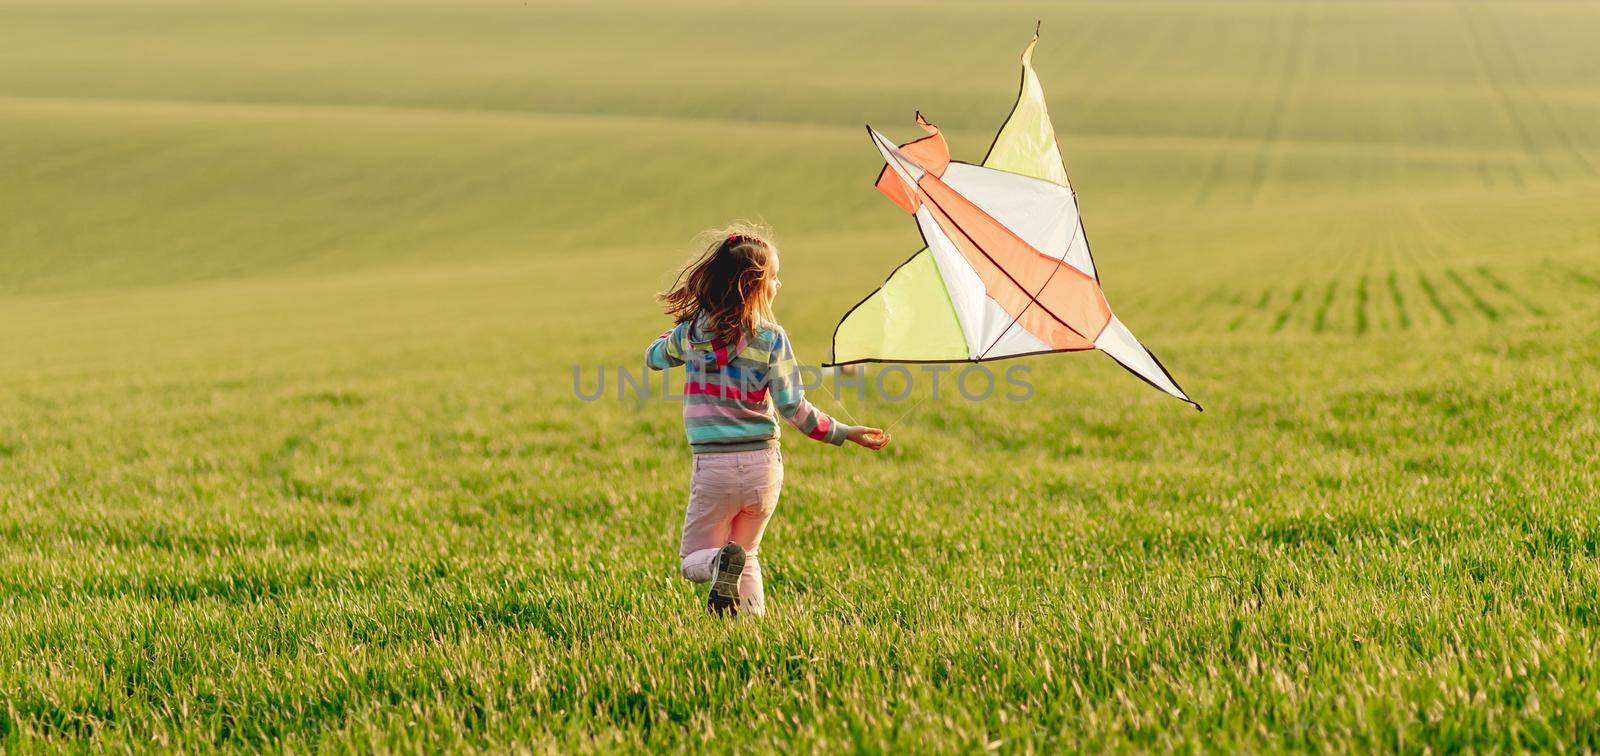 Little girl holding kite at sunset by tan4ikk1